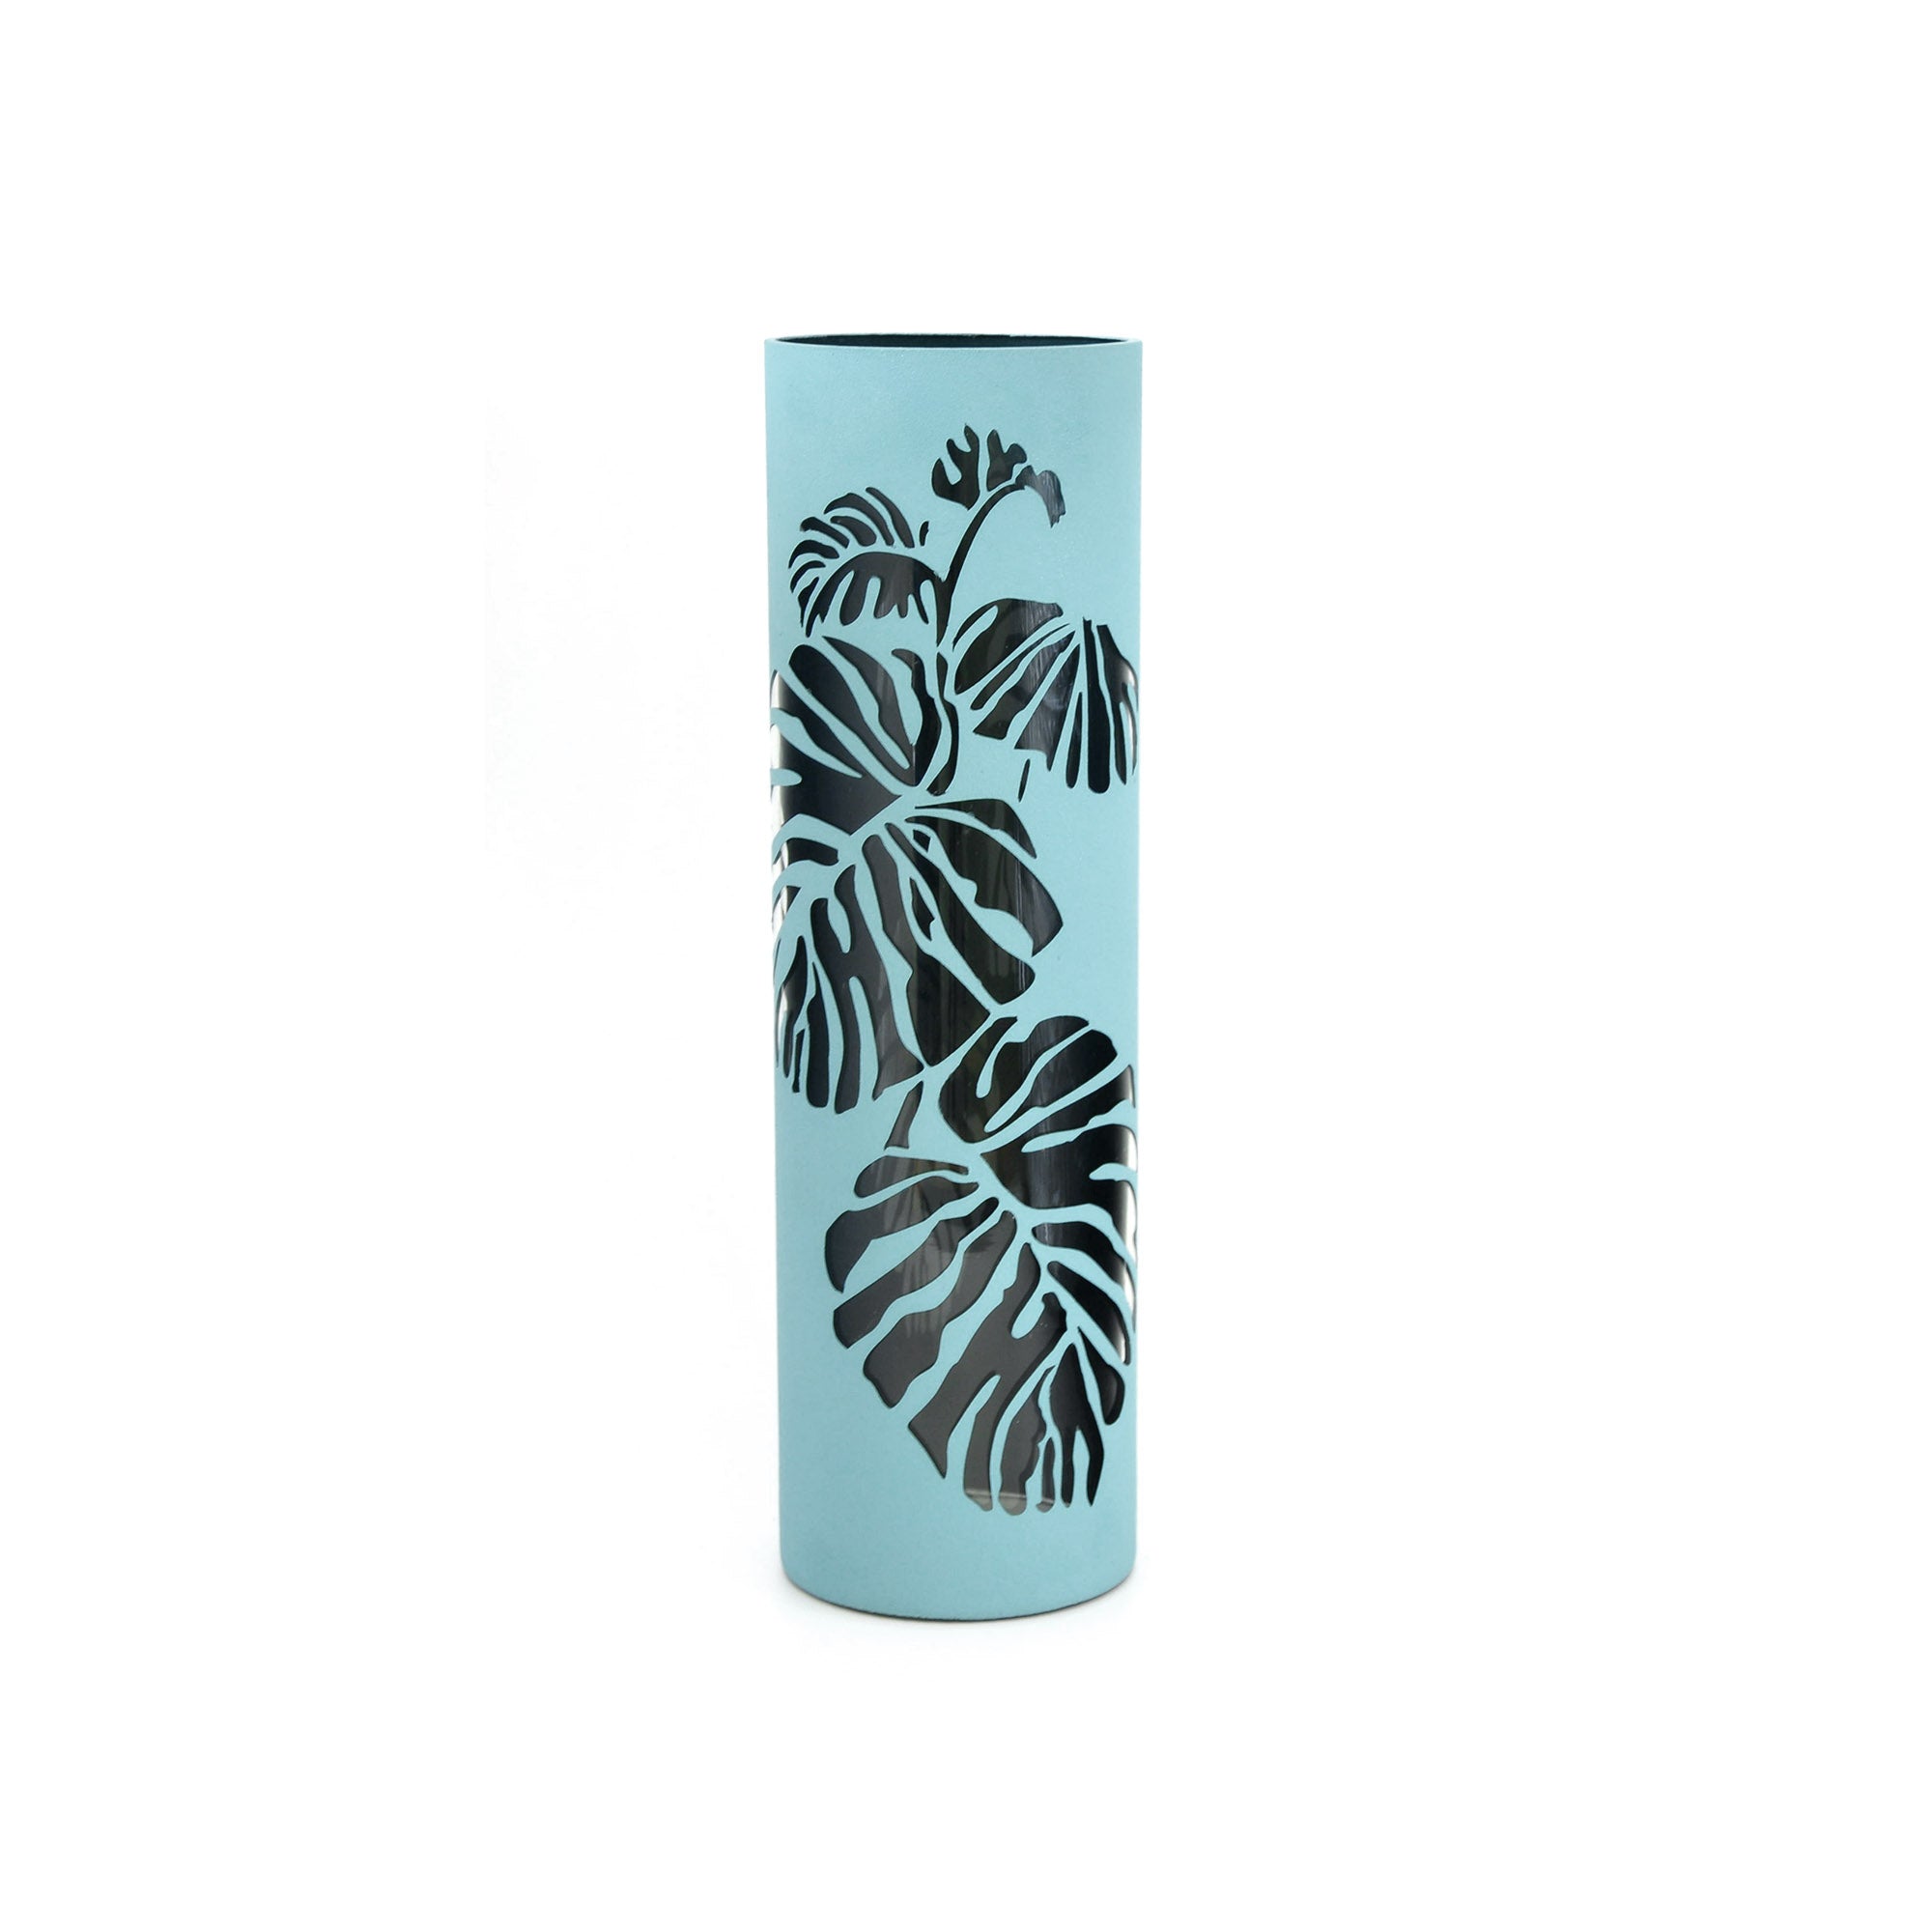 Clear leaves decorated glass vase | Glass vase for flowers | Cylinder Vase | Interior Design | Home Decor | Large Floor Vase 16 inch